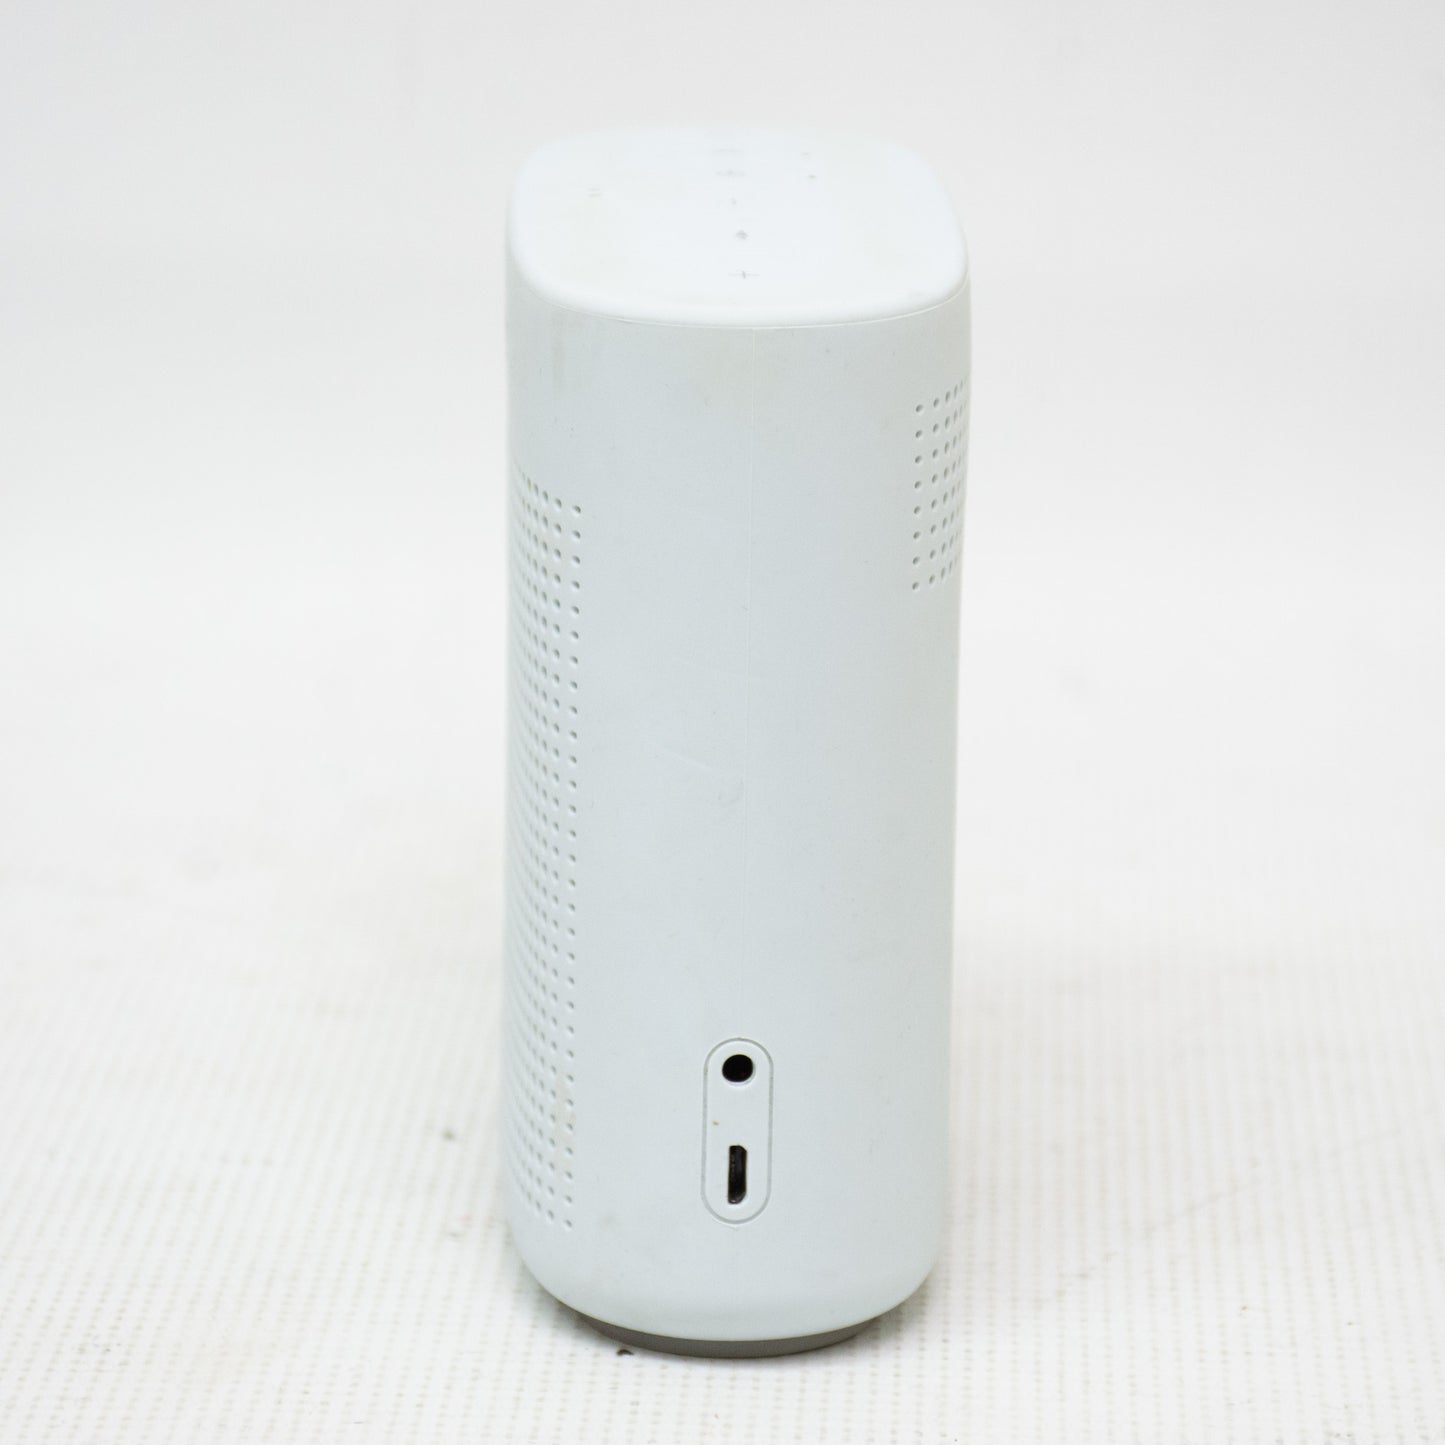 Bose Soundlink Color 2 Speaker - White